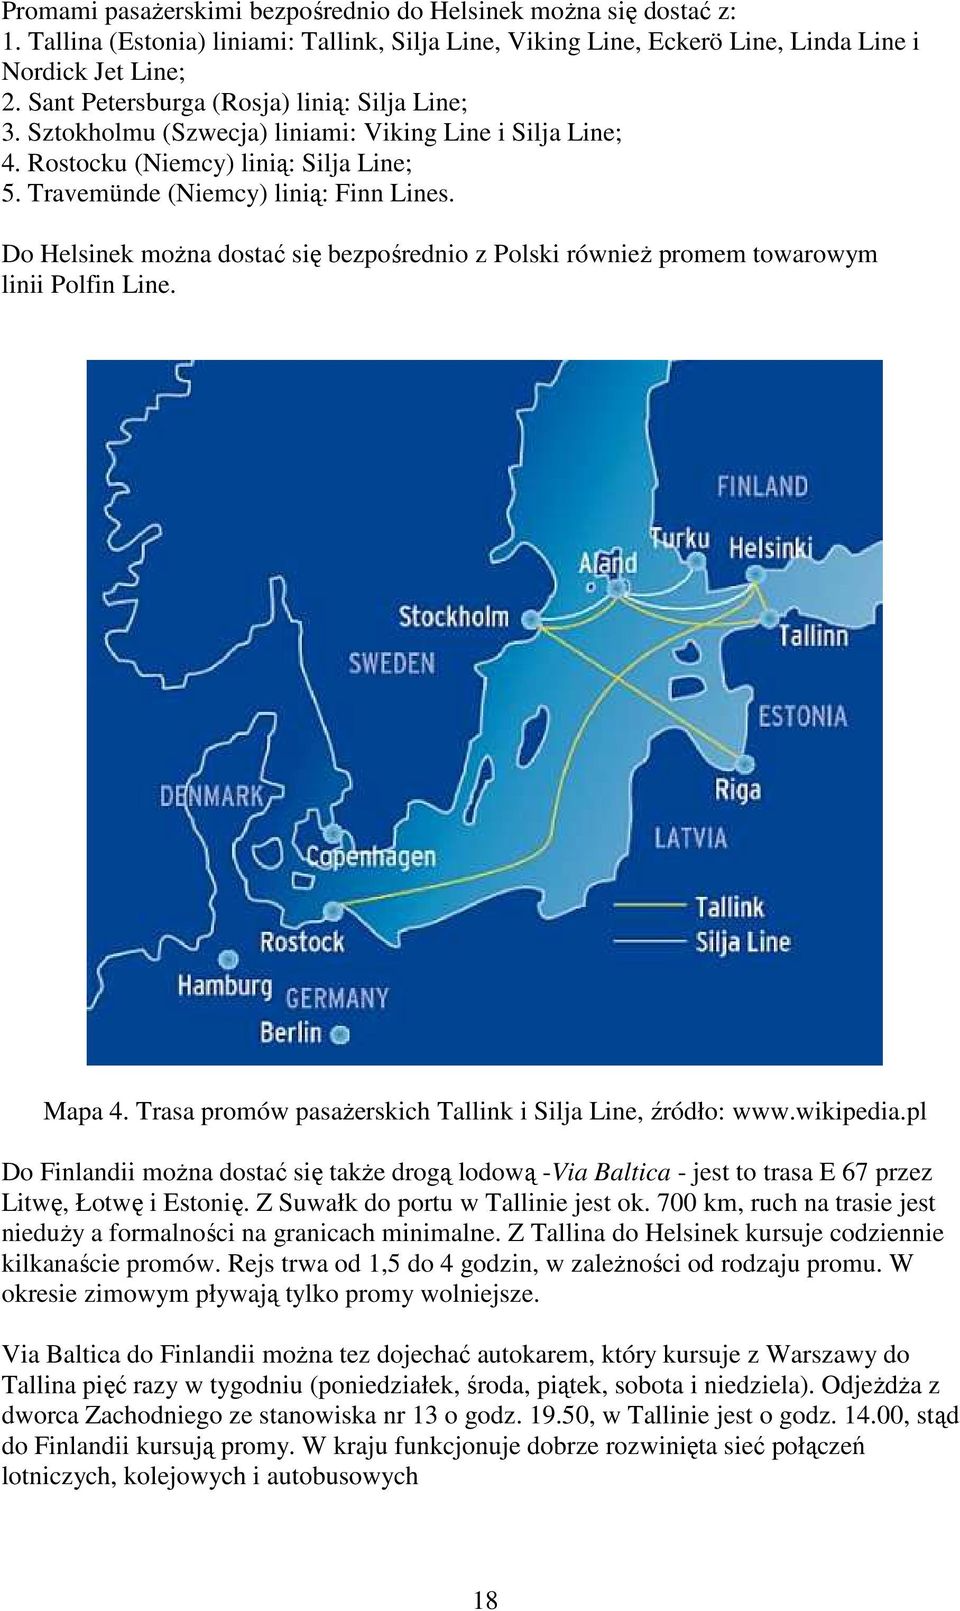 Do Helsinek moŝna dostać się bezpośrednio z Polski równieŝ promem towarowym linii Polfin Line. Mapa 4. Trasa promów pasaŝerskich Tallink i Silja Line, źródło: www.wikipedia.